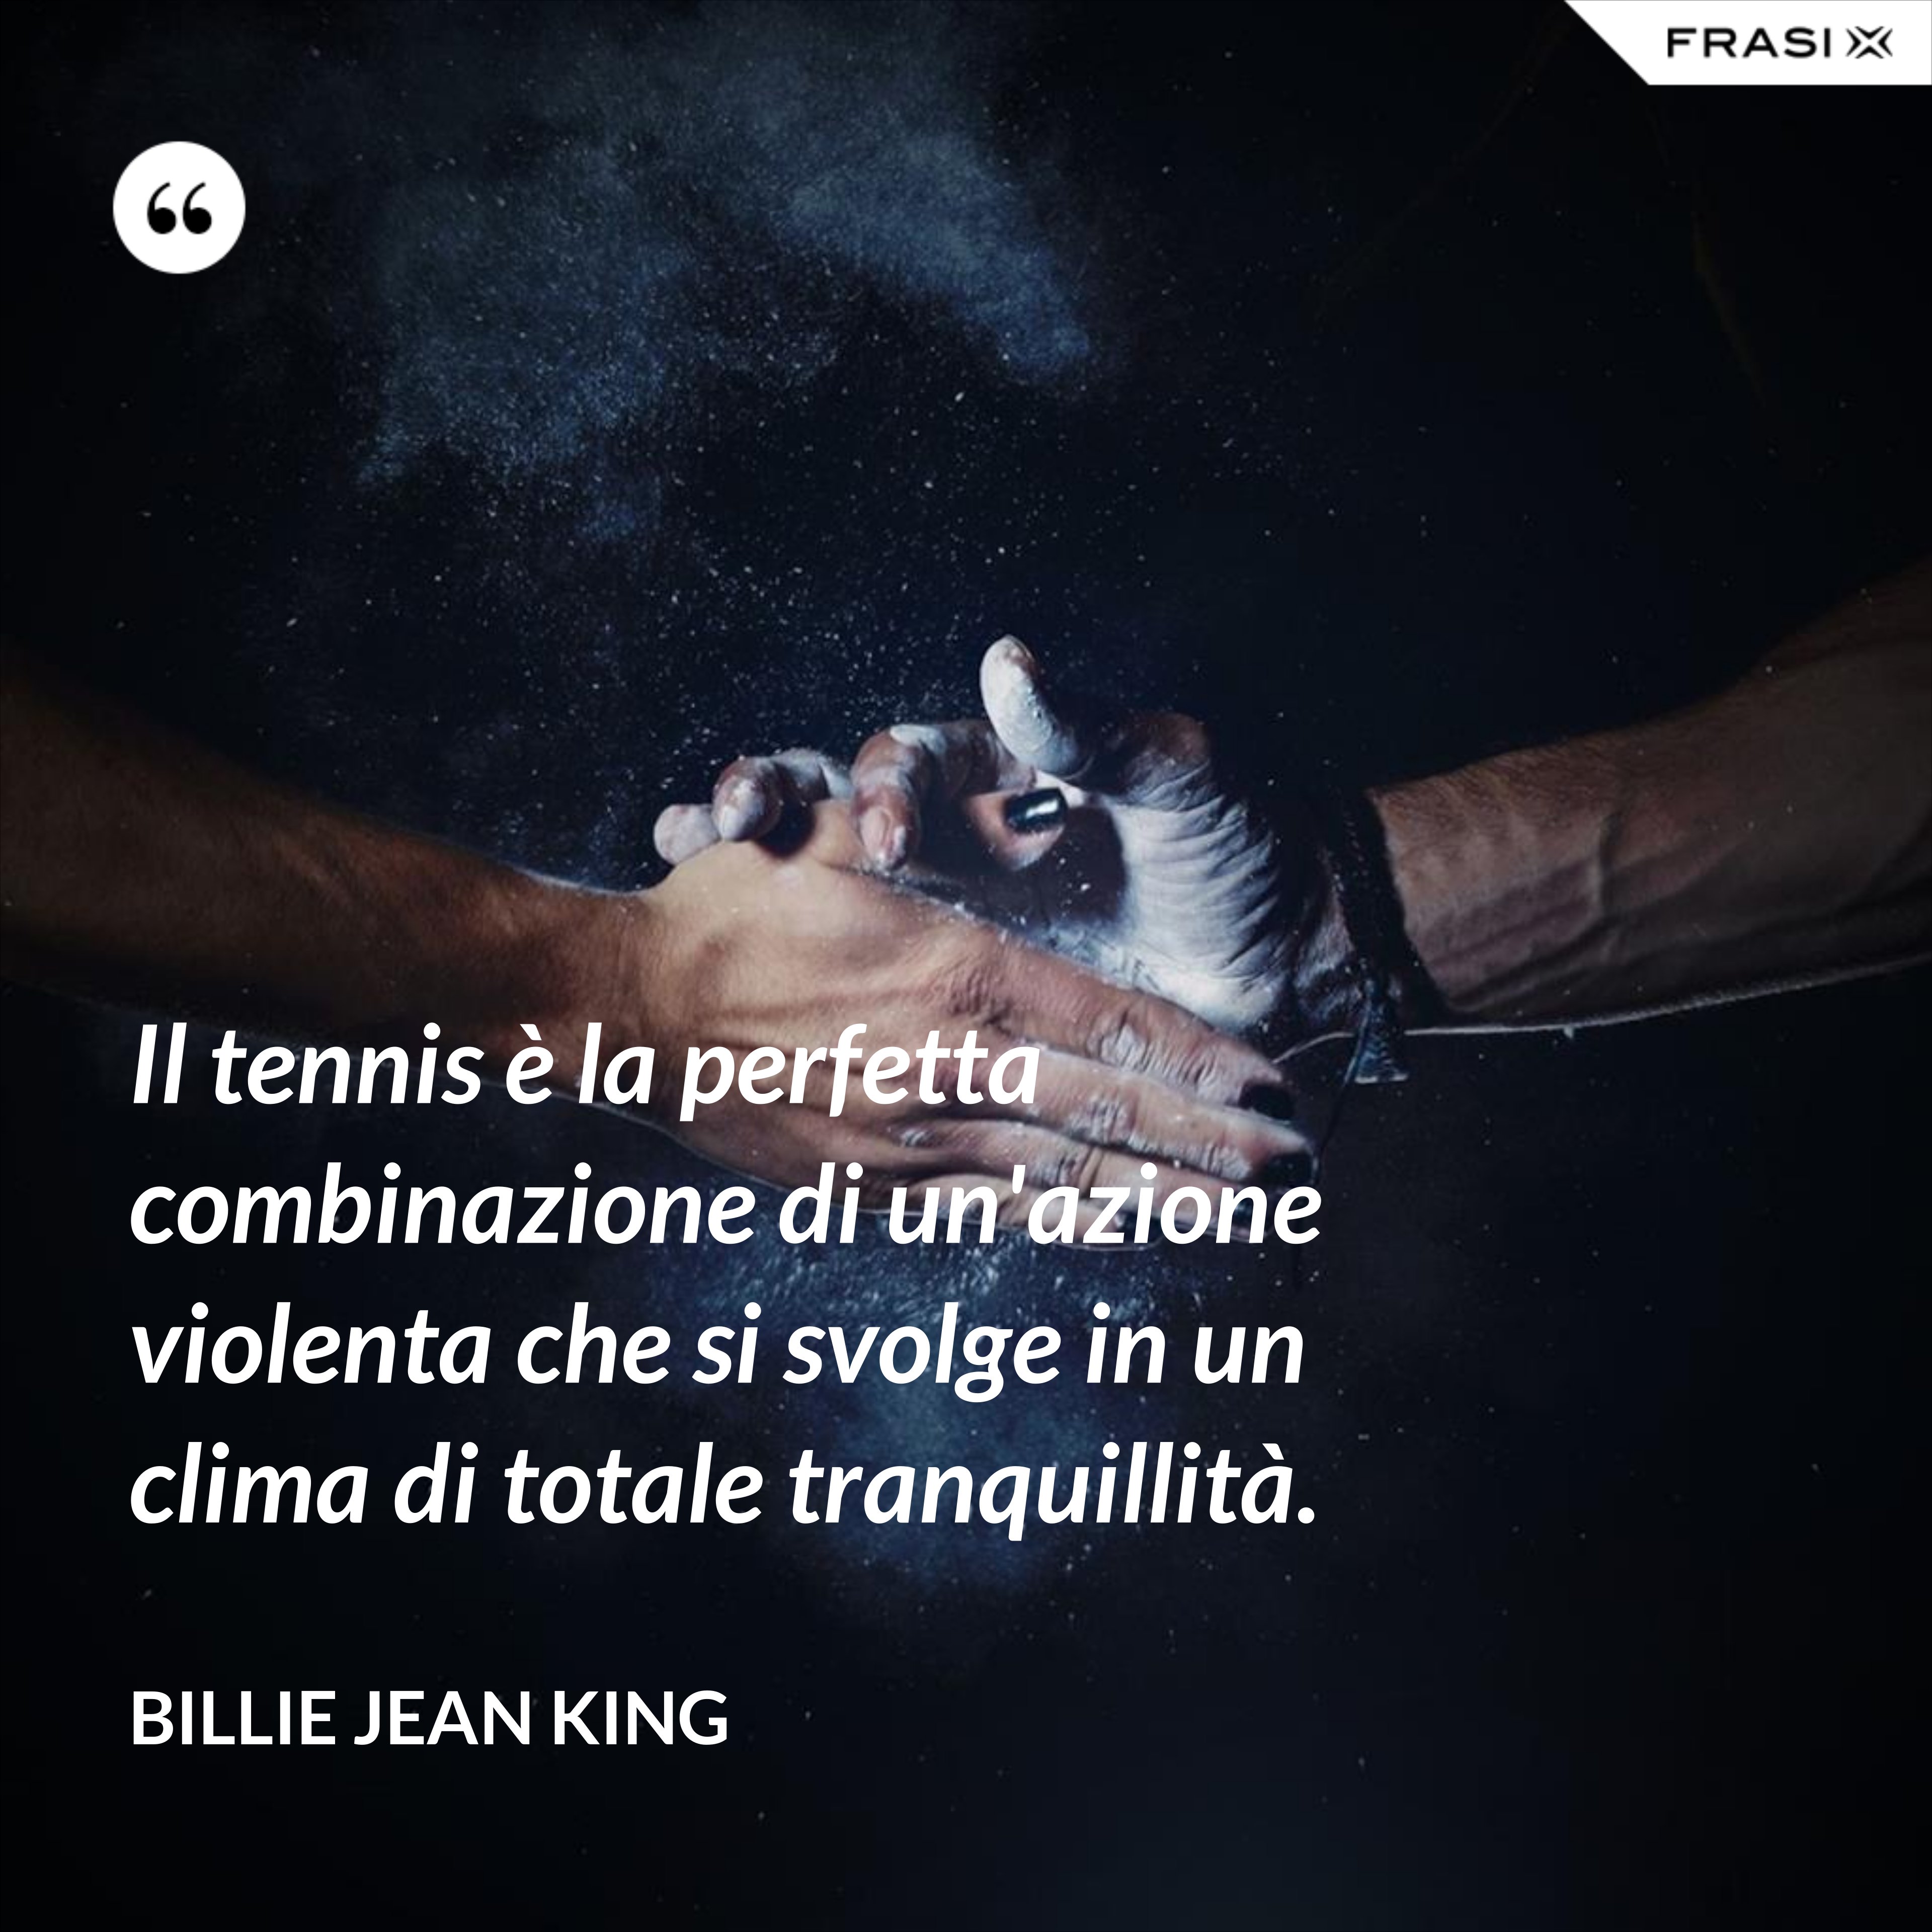 Il tennis è la perfetta combinazione di un'azione violenta che si svolge in un clima di totale tranquillità. - Billie Jean King